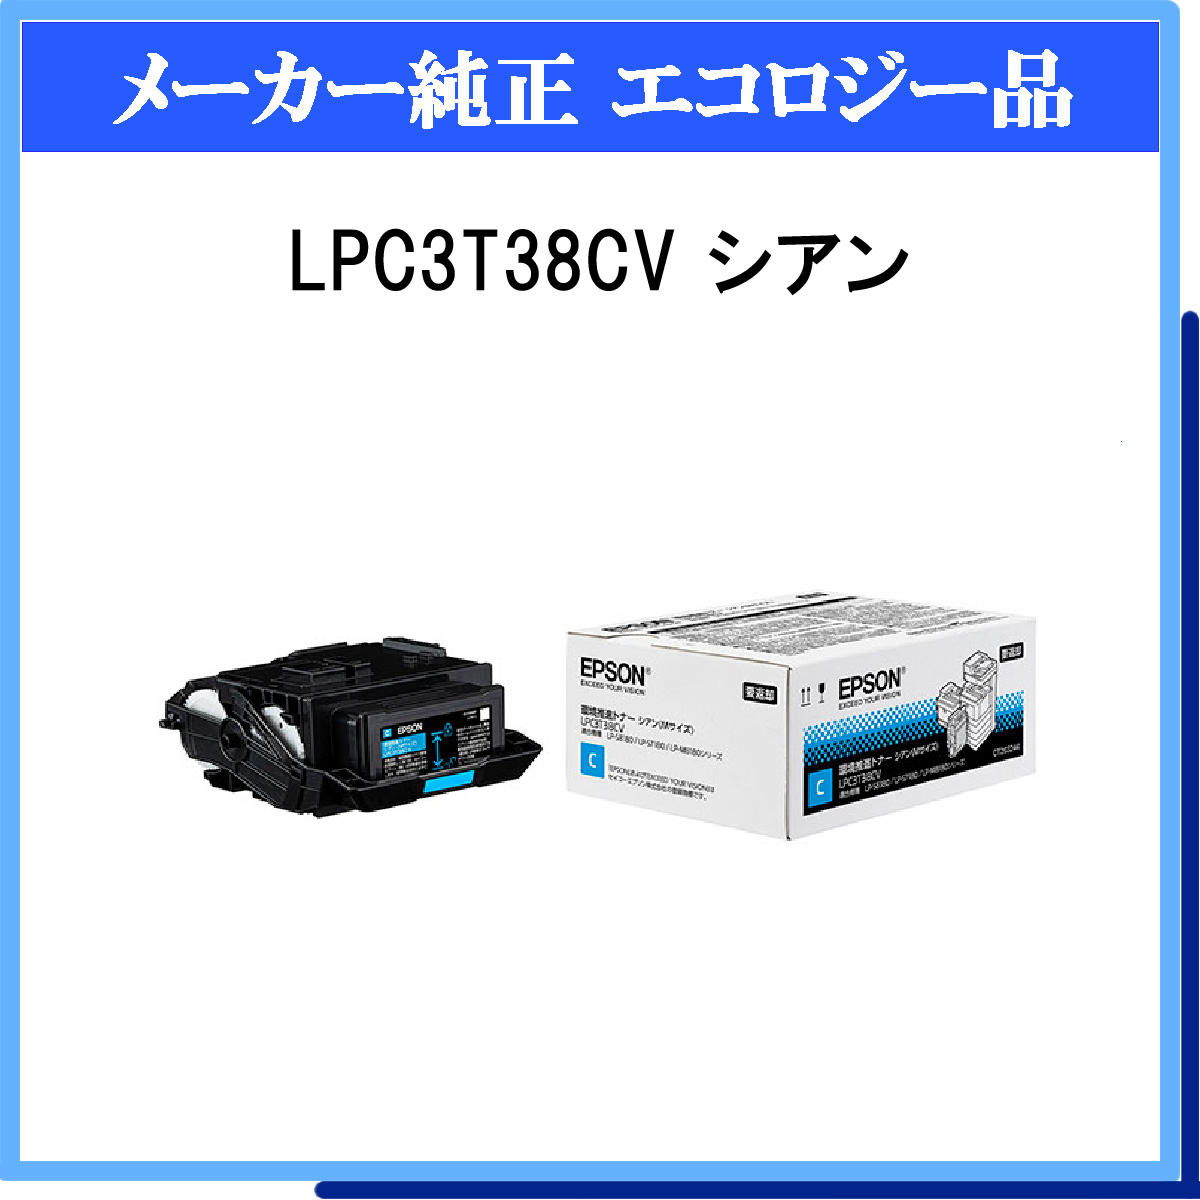 LPC3T38CV 環境推進ﾄﾅｰ